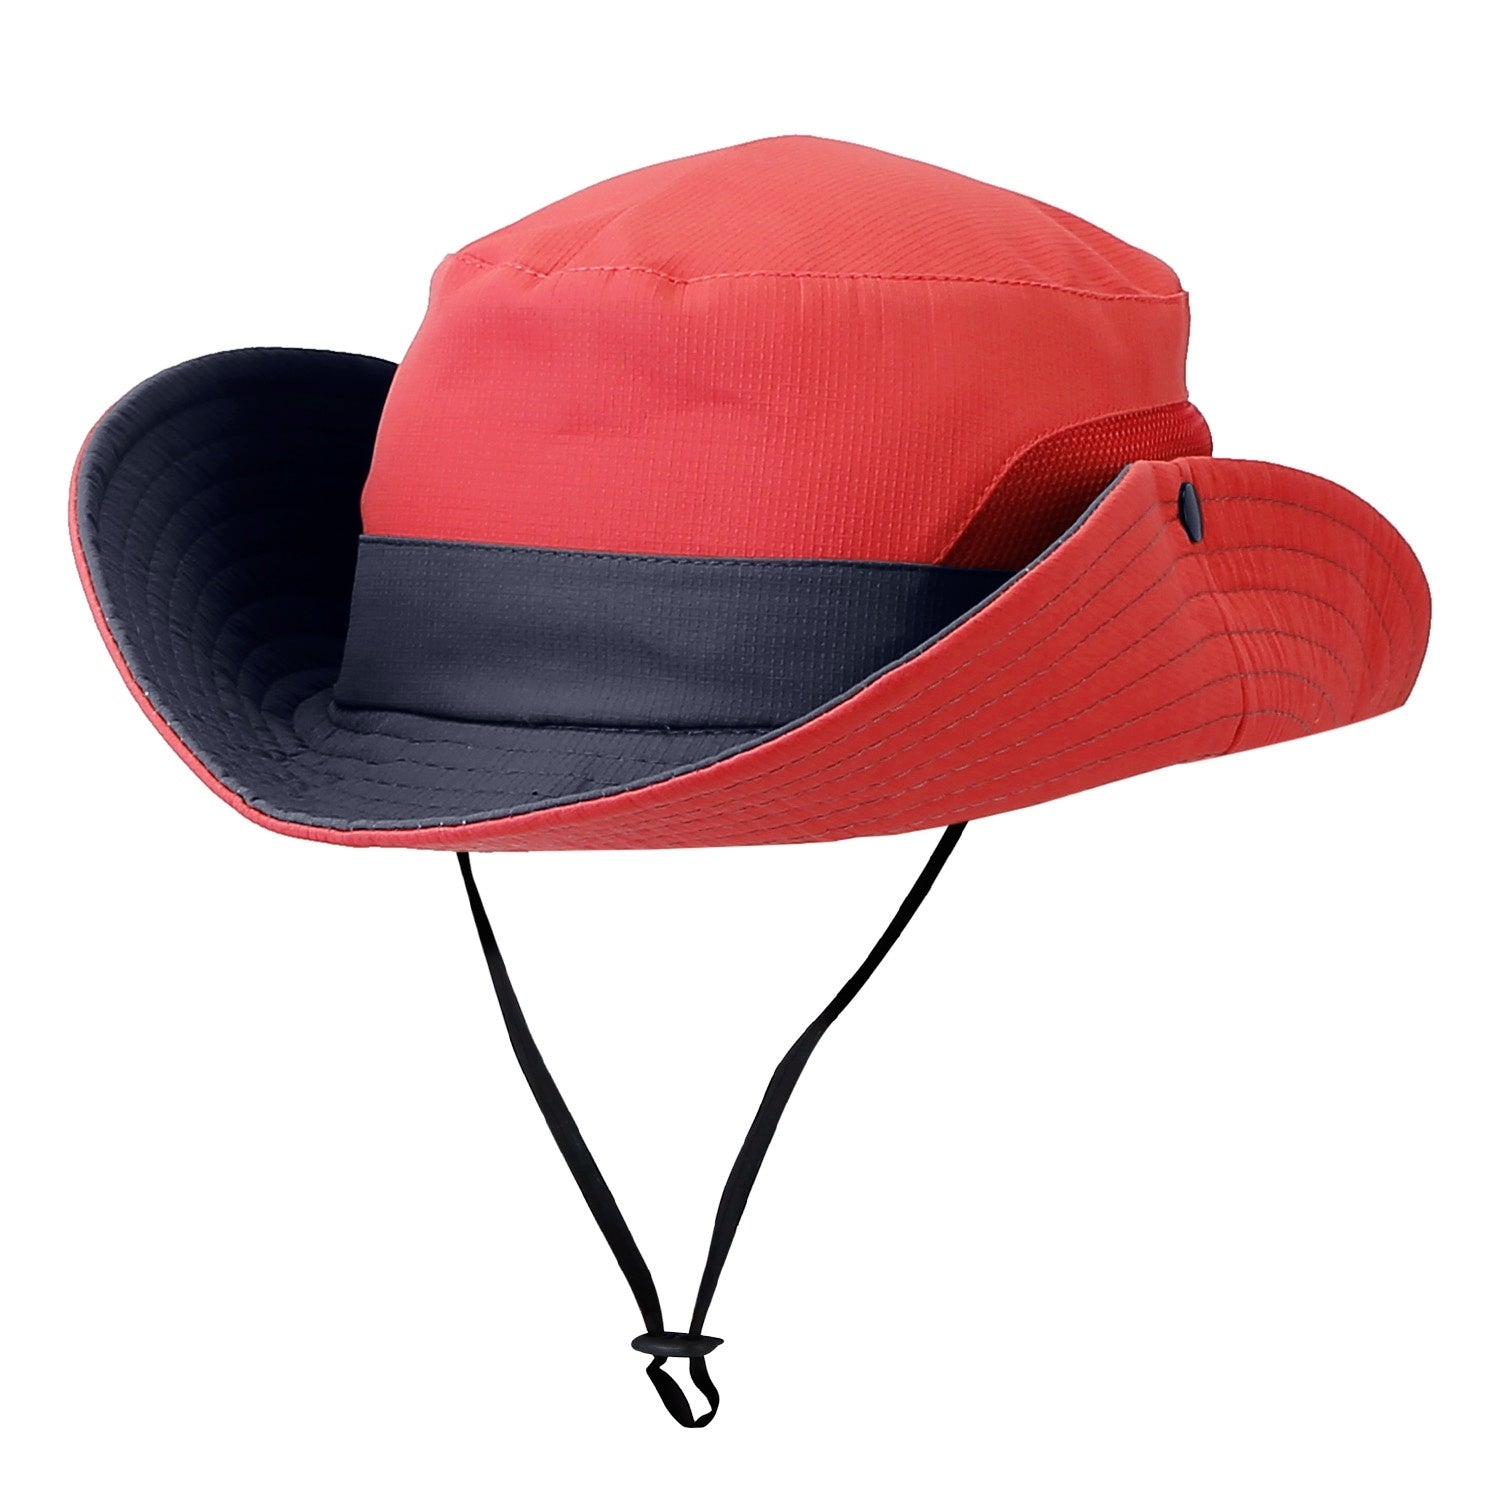 Garden Hat for Women and Men, Bucket Hat Unisex